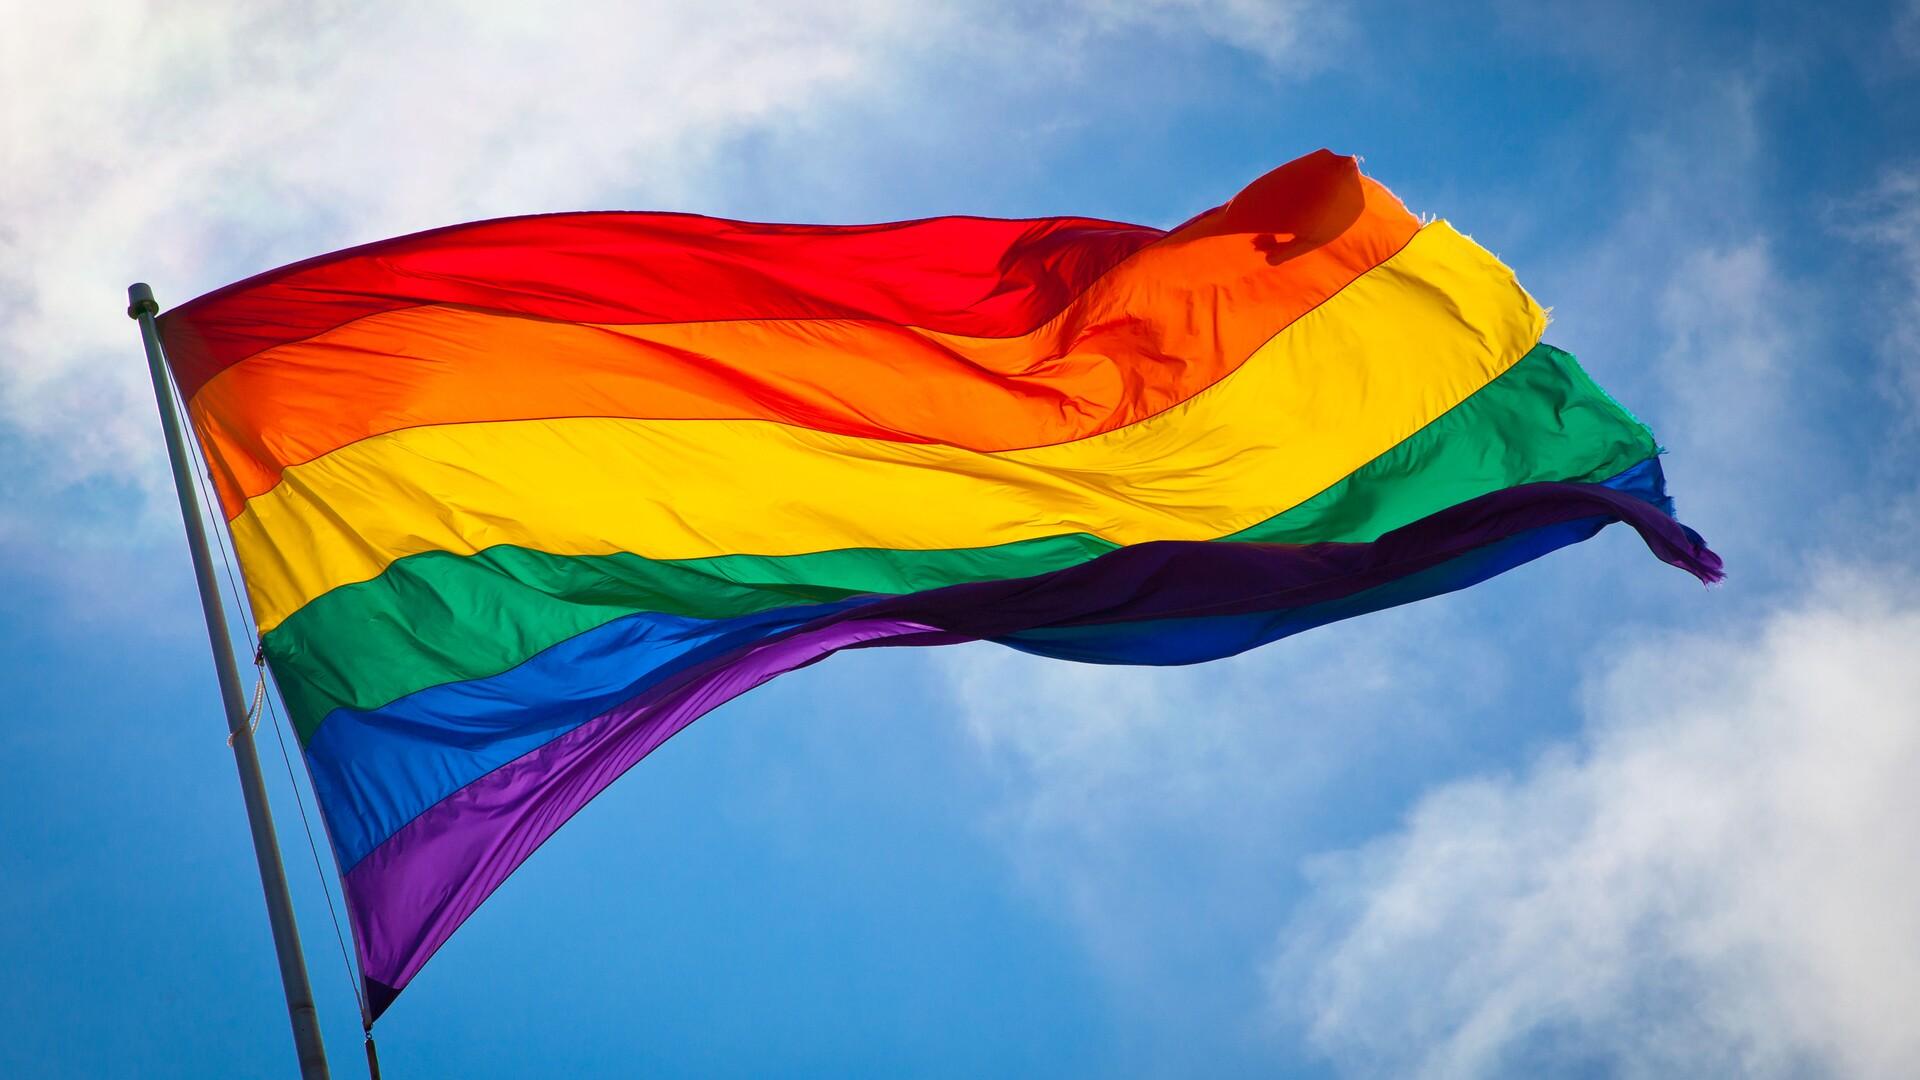 Flagga i regnbågsfärger.